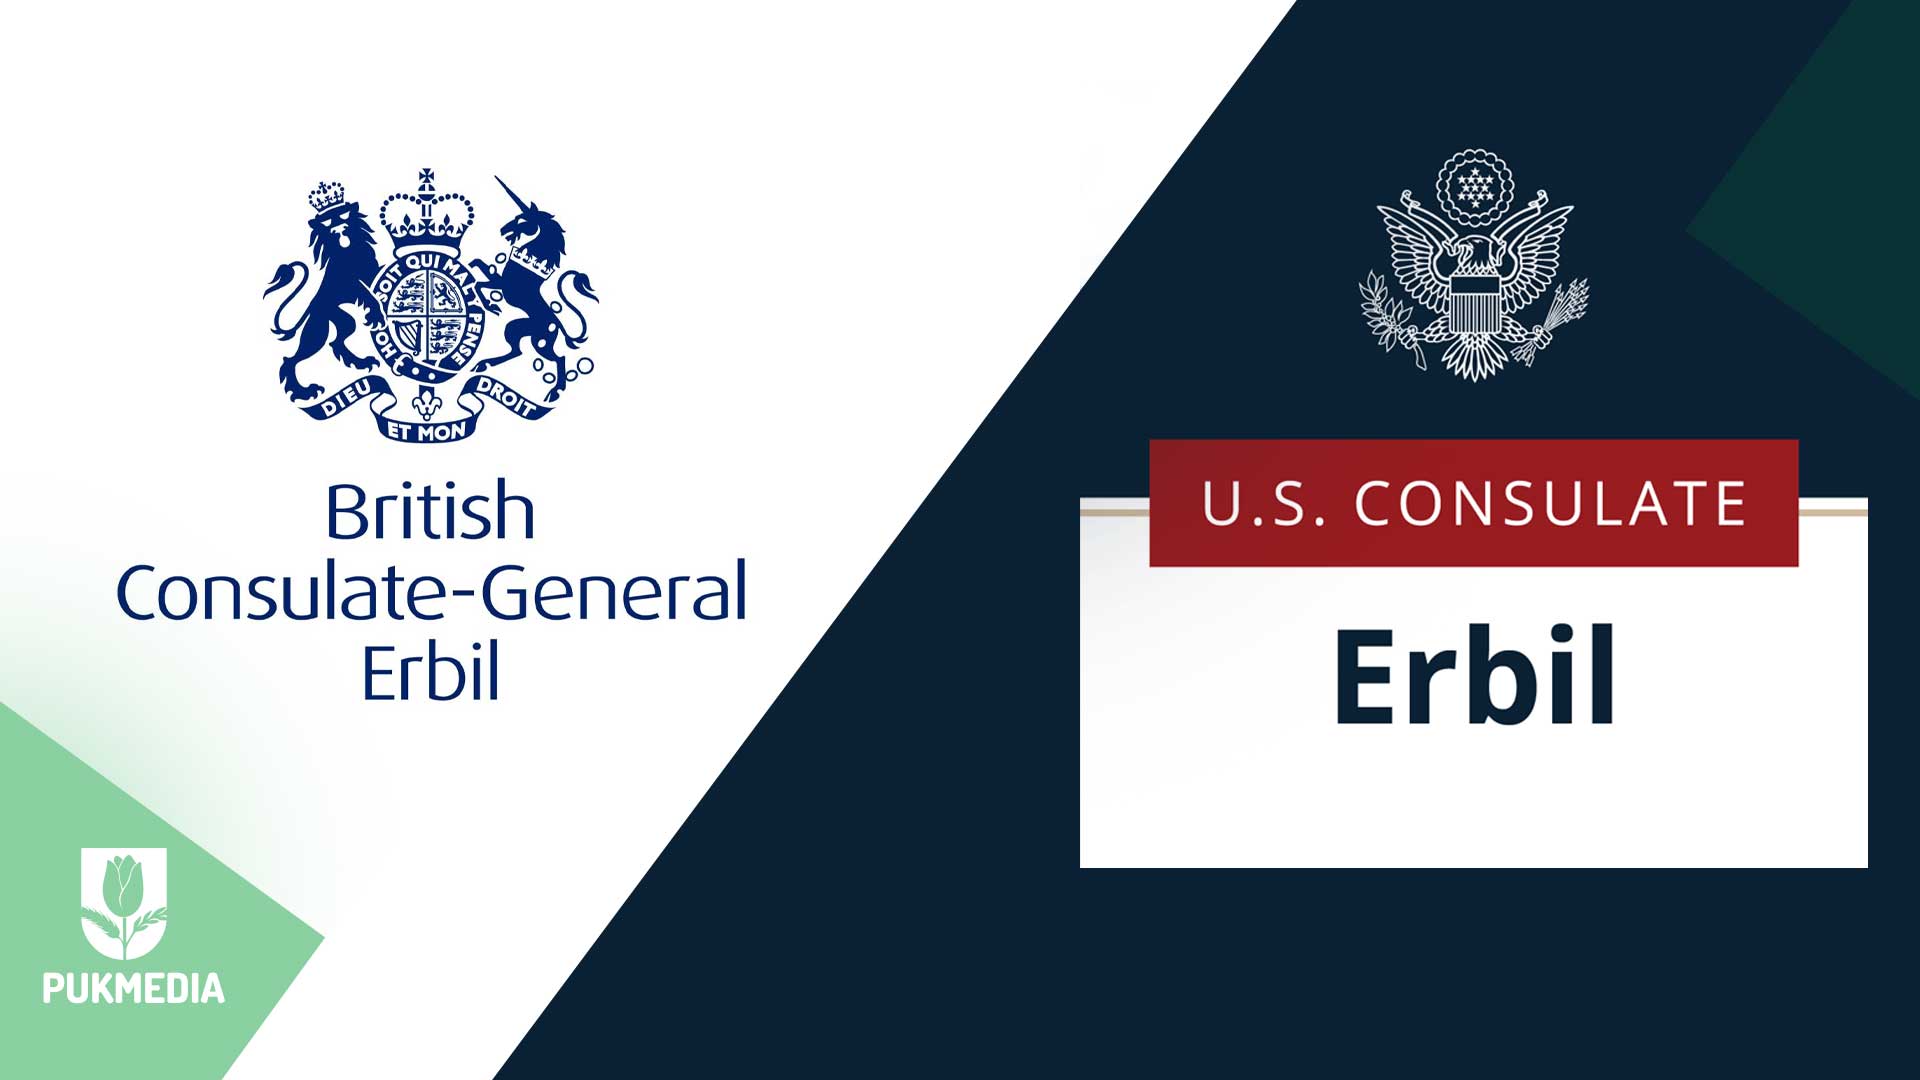 UK and U.S. consulates' logos